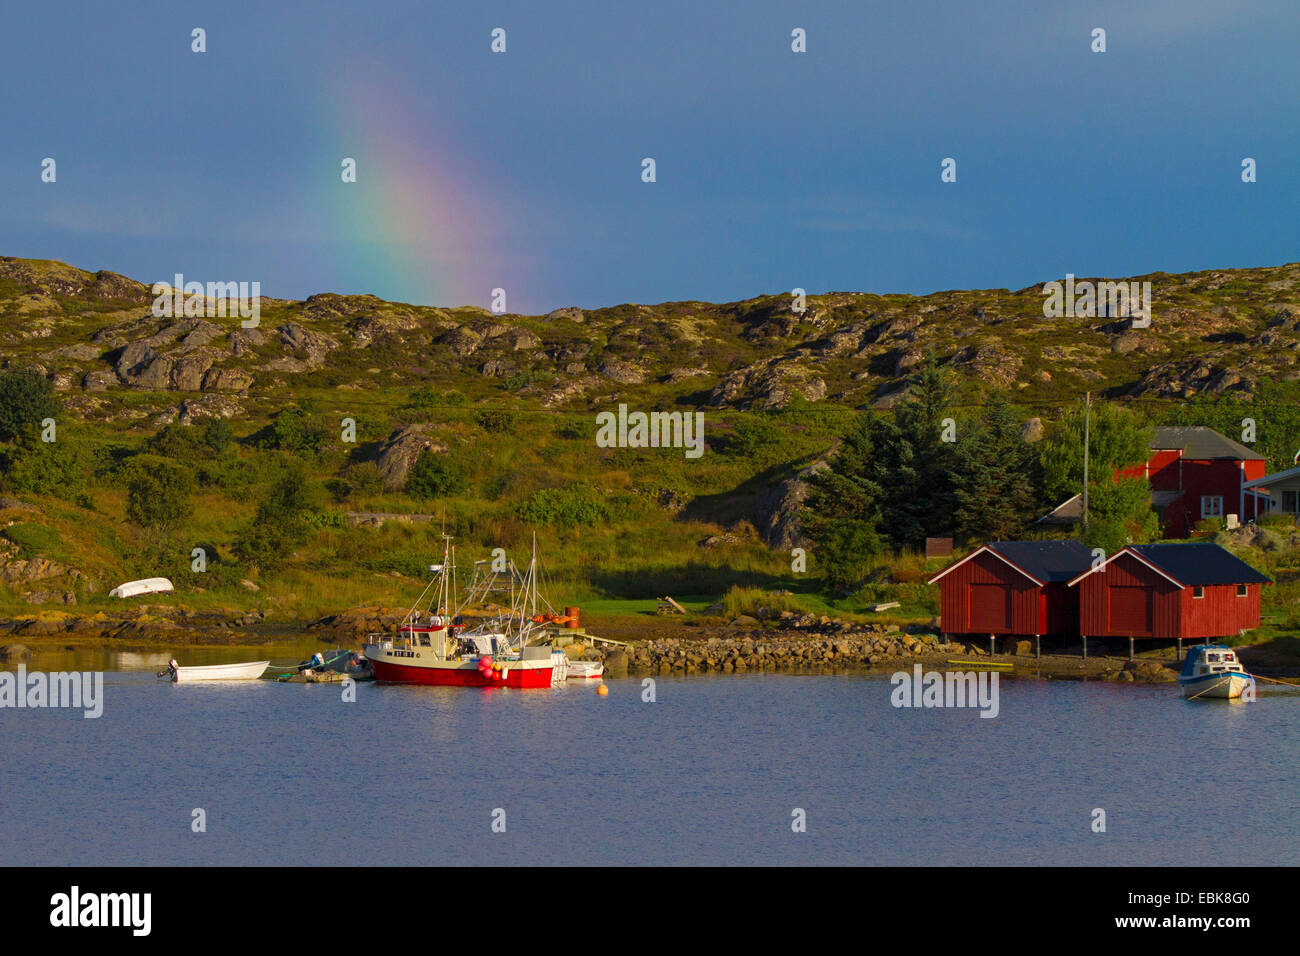 Rainbow su barche da pesca in un fiordo, Norvegia, Hitra Foto Stock